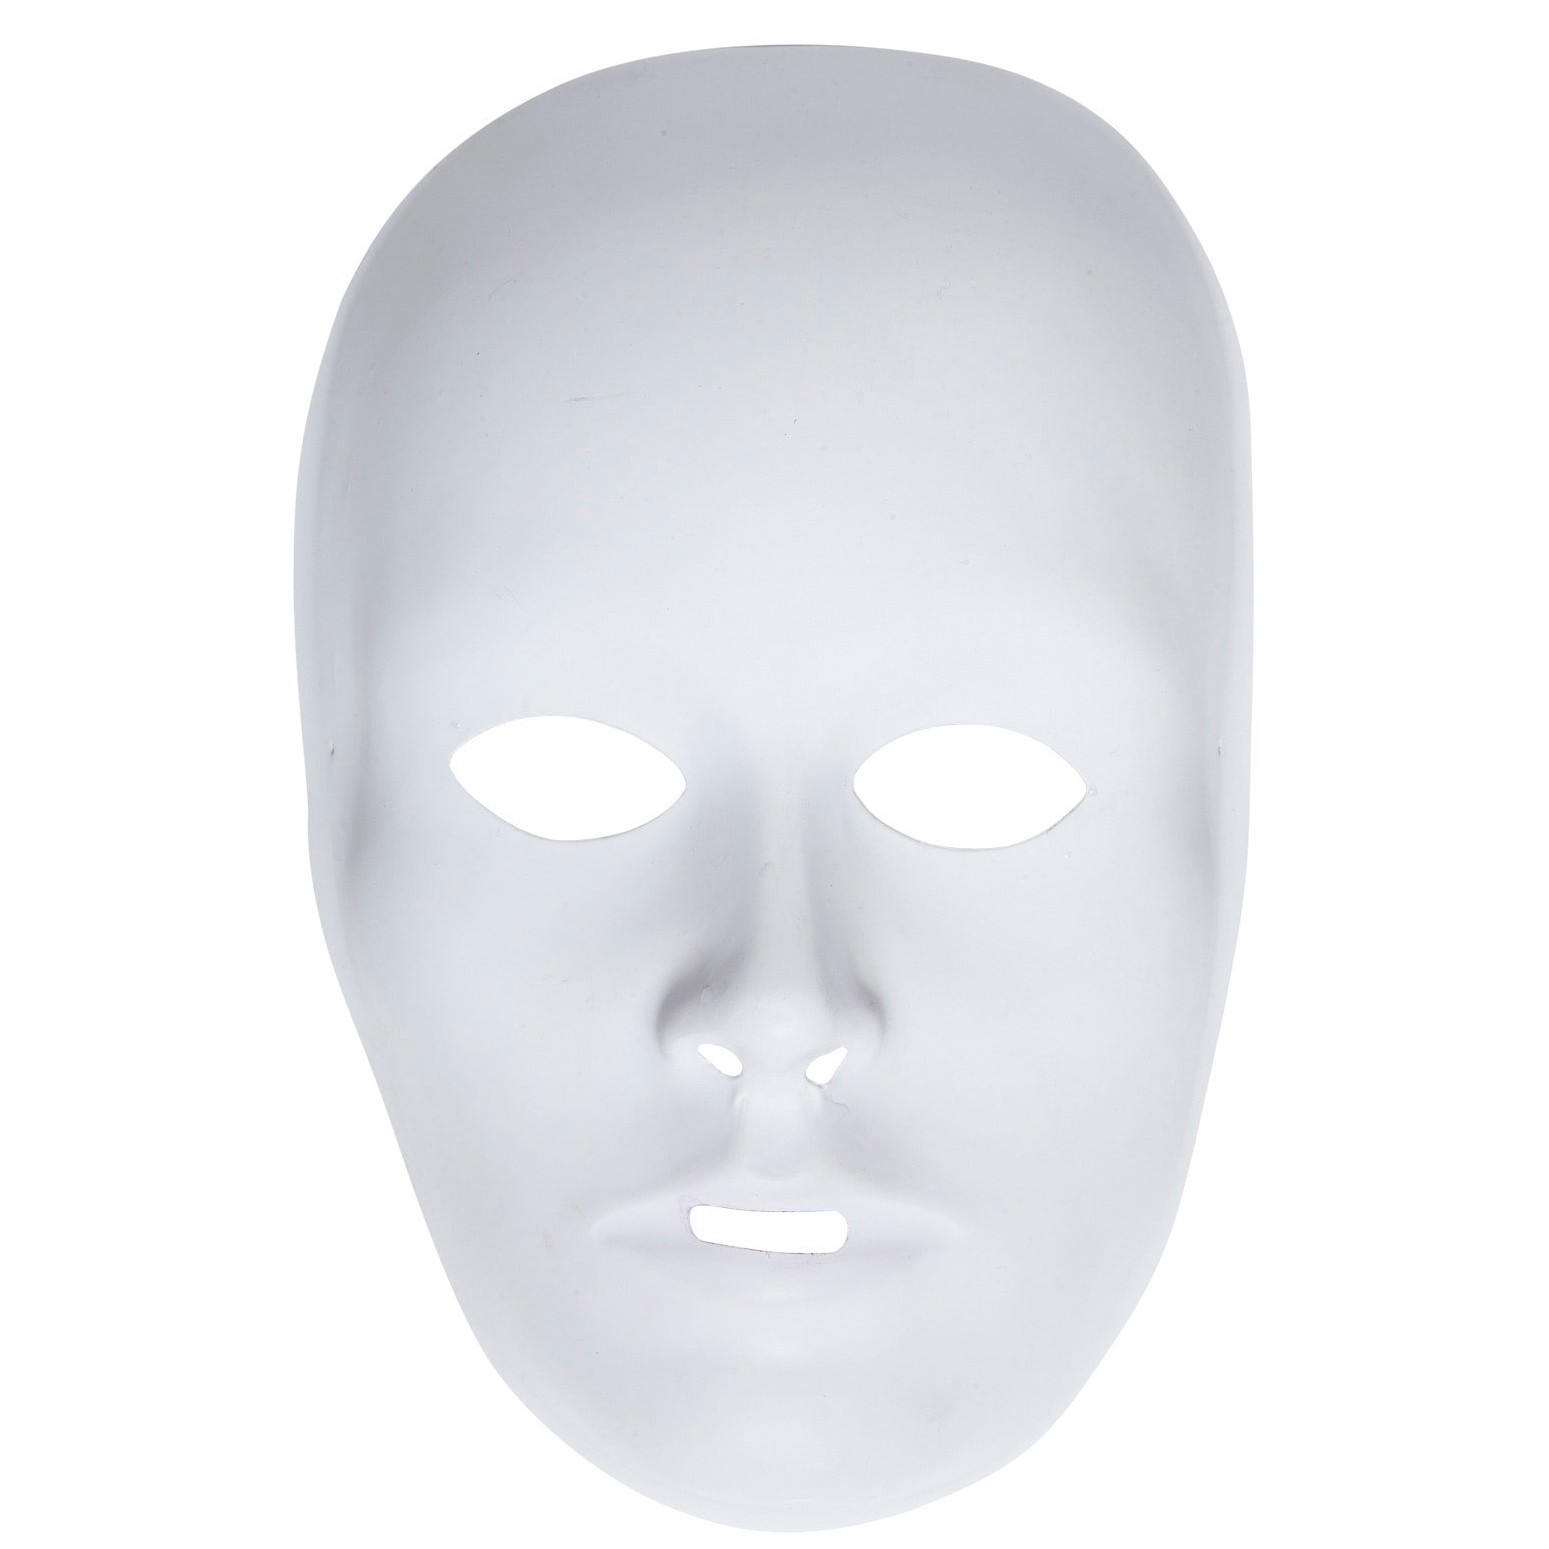 Ballmaske unbemalt ideal zum selbst bemalen weiße Halbmaske Phantom Opernmaske 